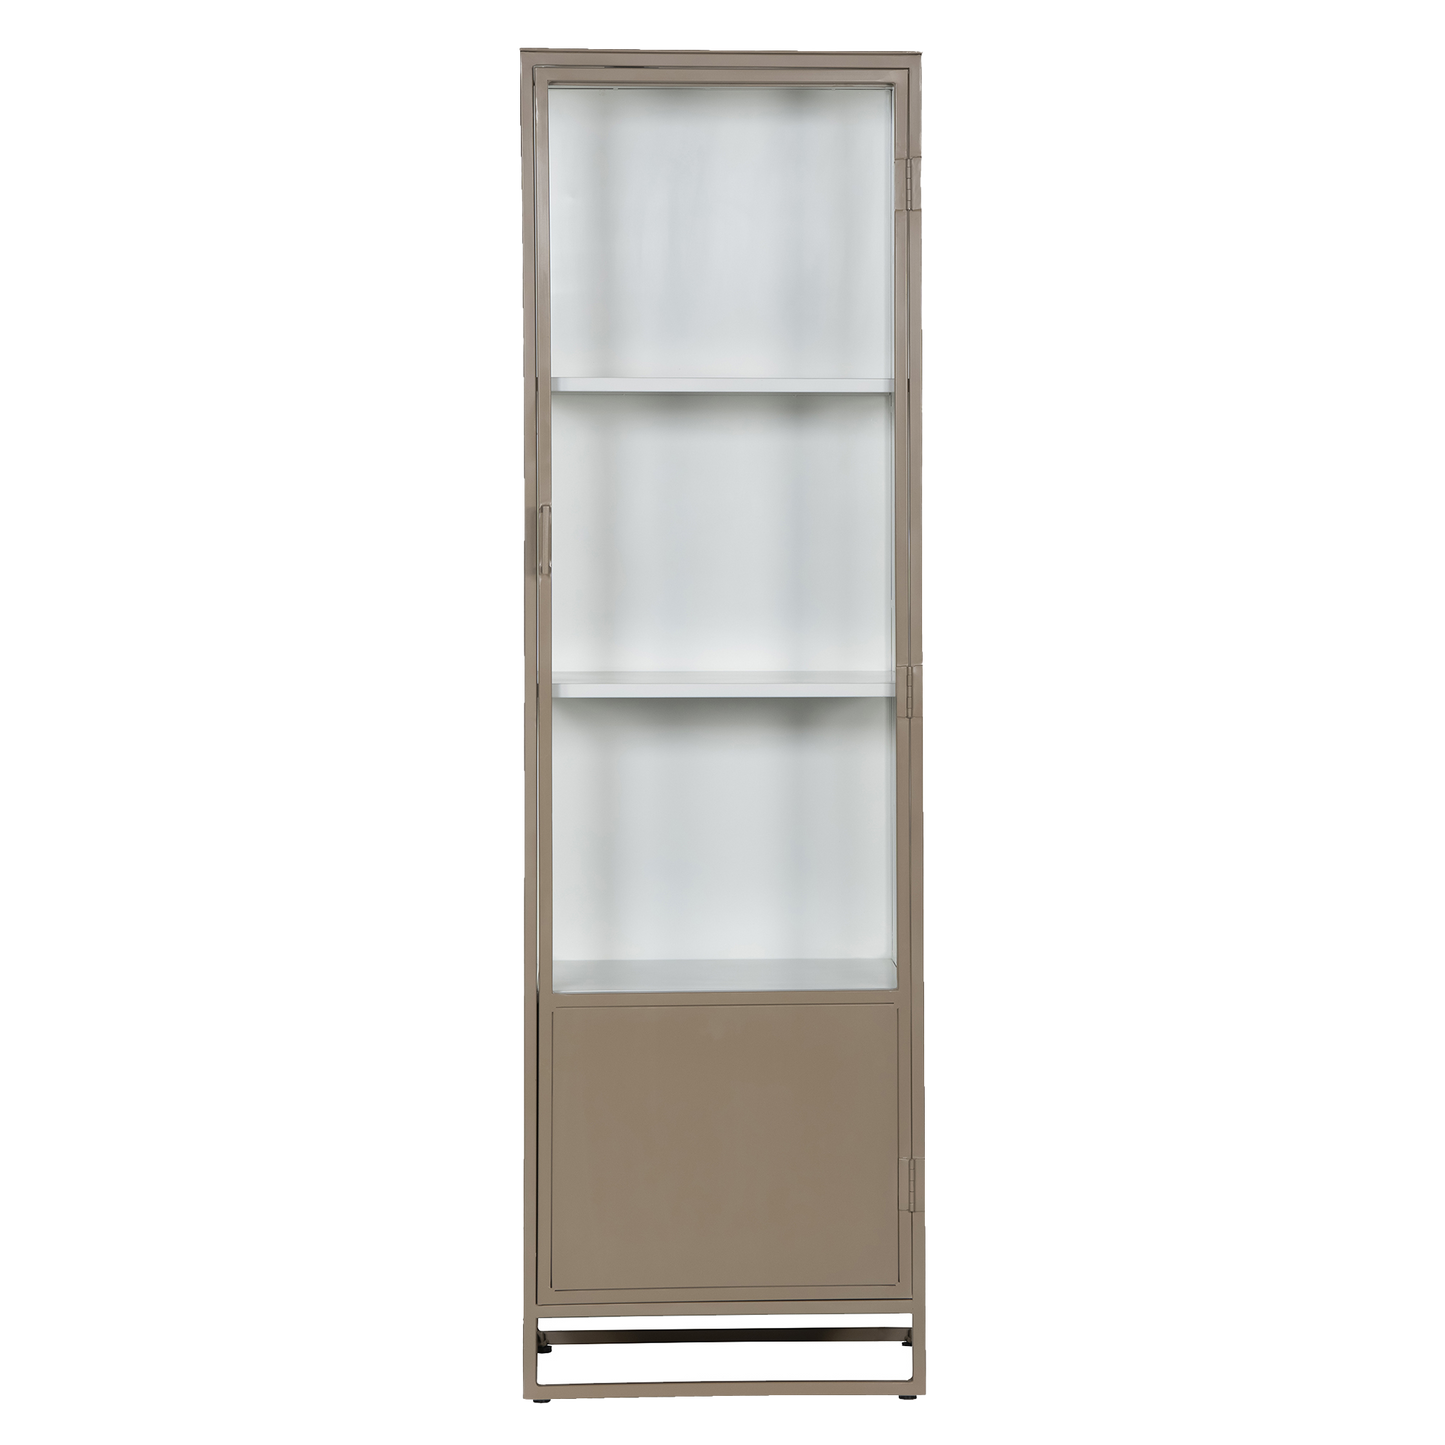 Metal single door glass cabinet 200cm biscuit